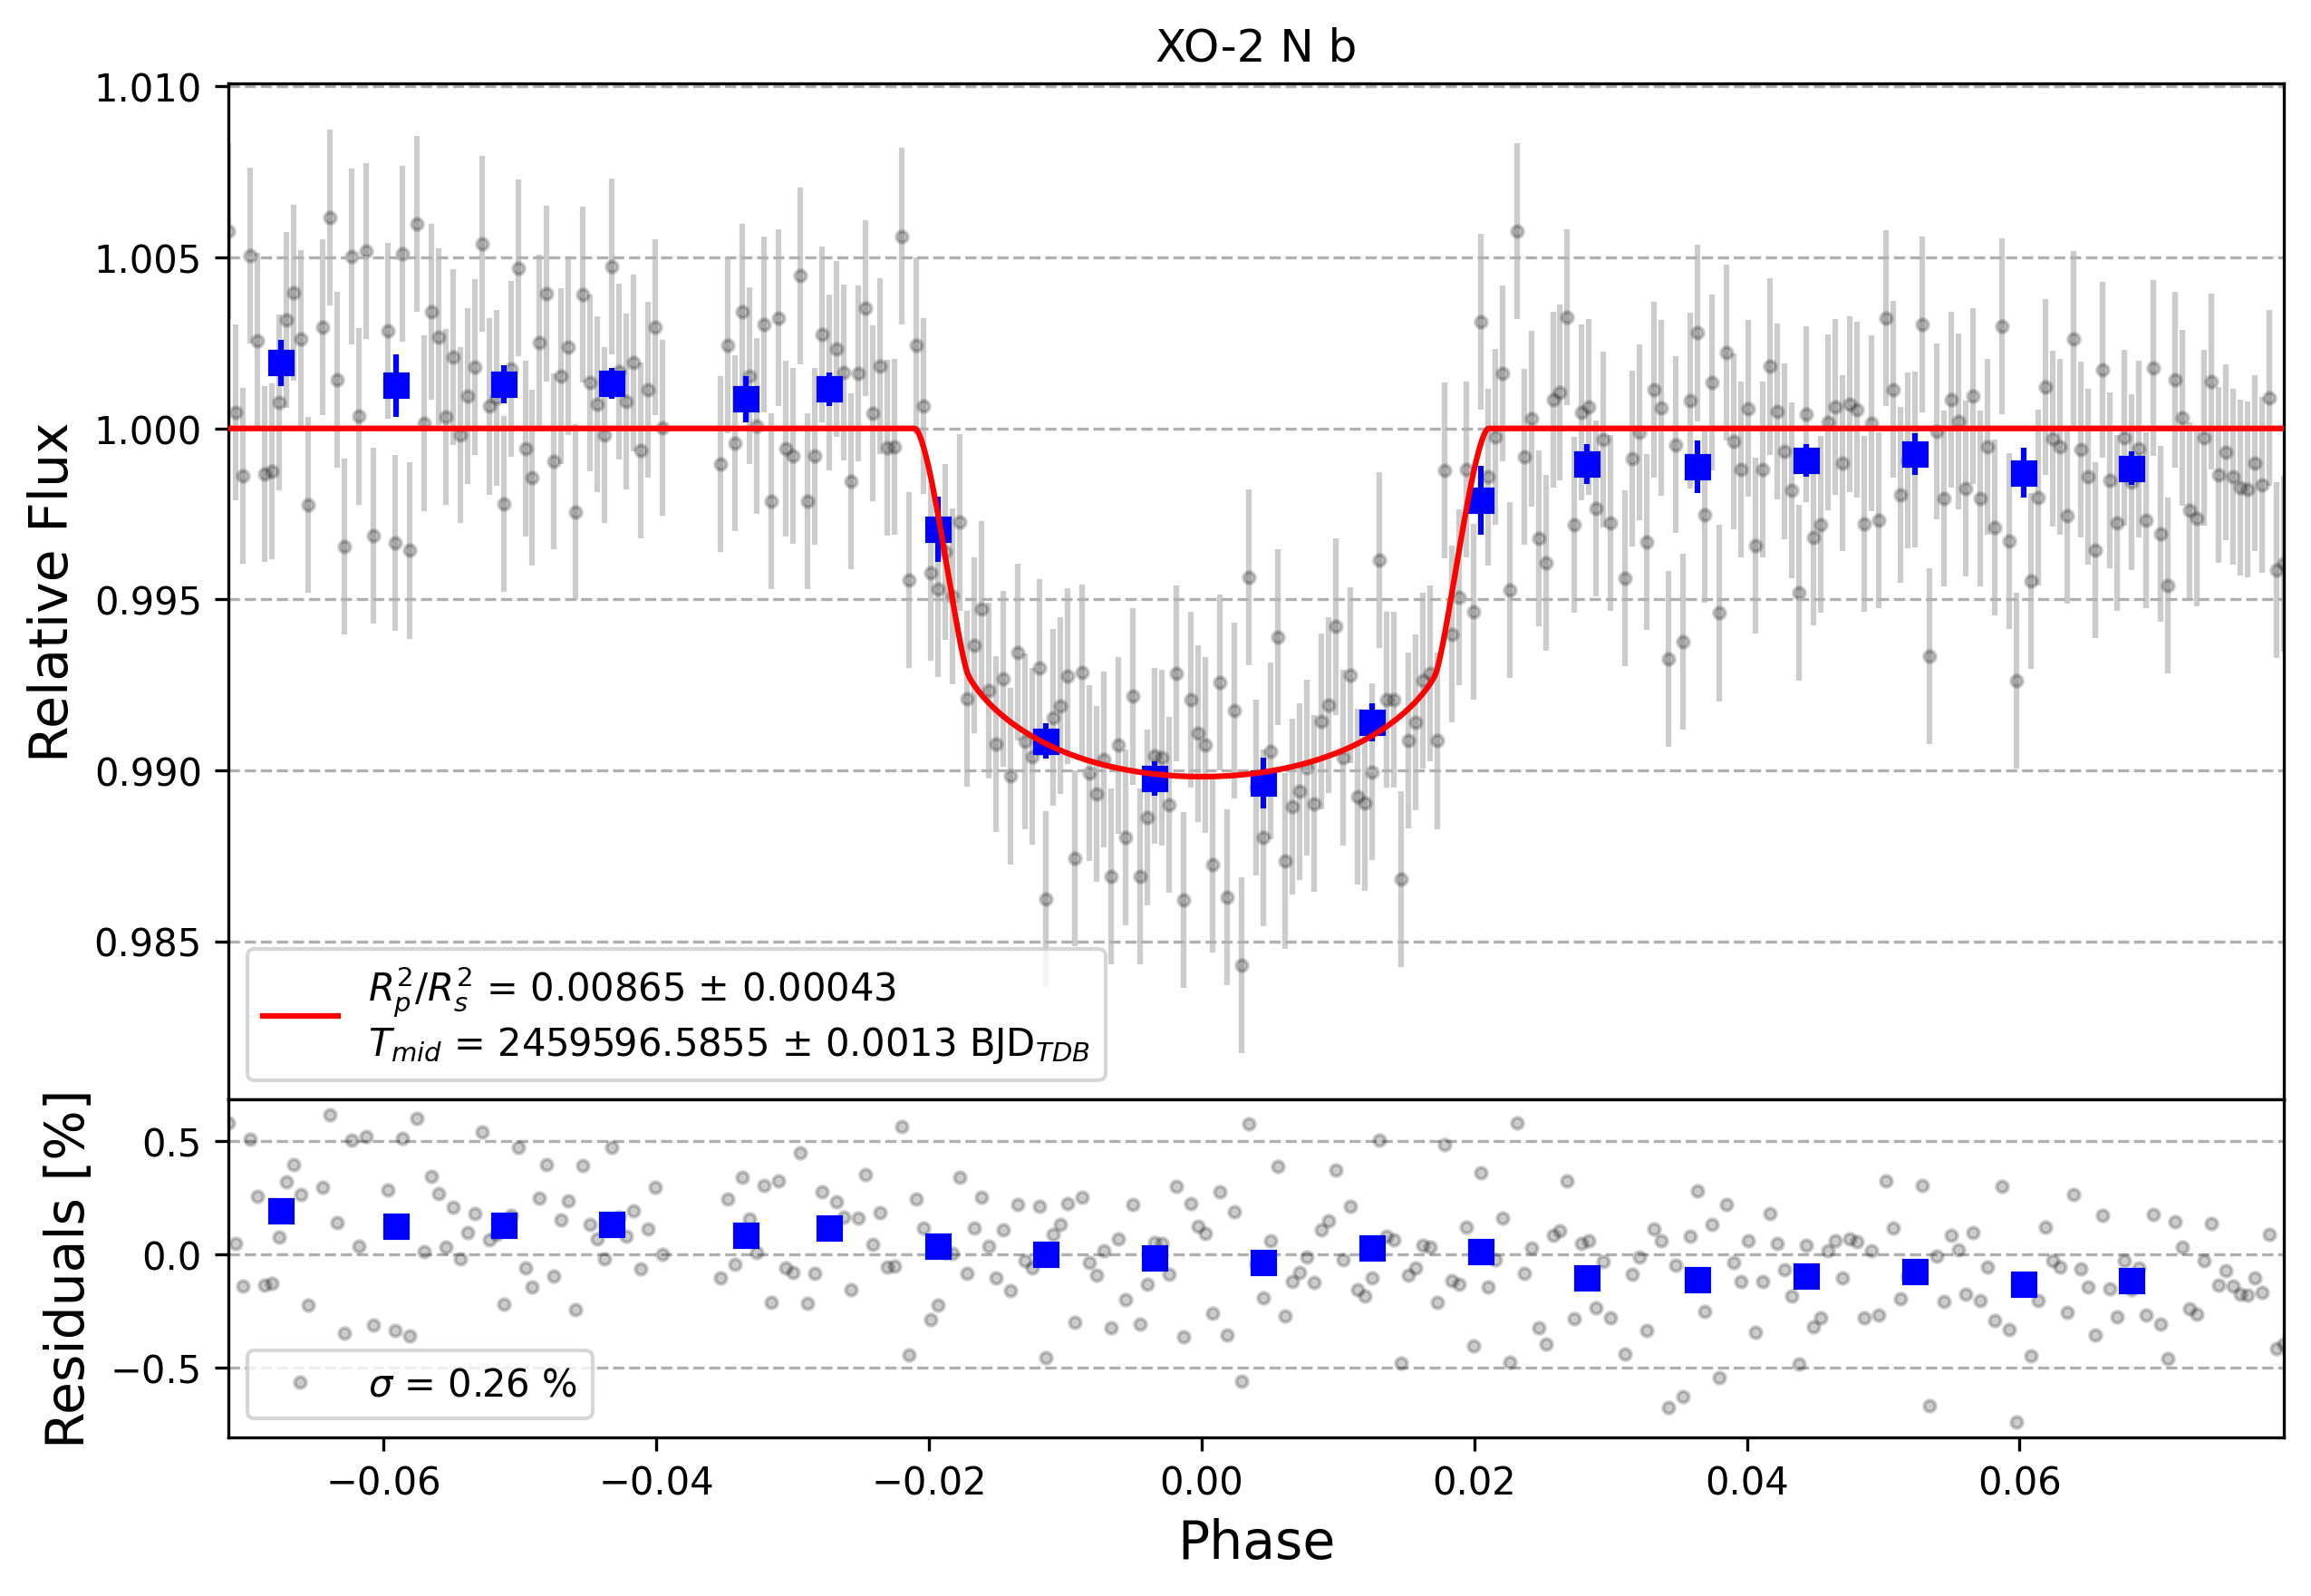 Light curve chart for acef8416a41d2d49e40e7433bfb6c6a7